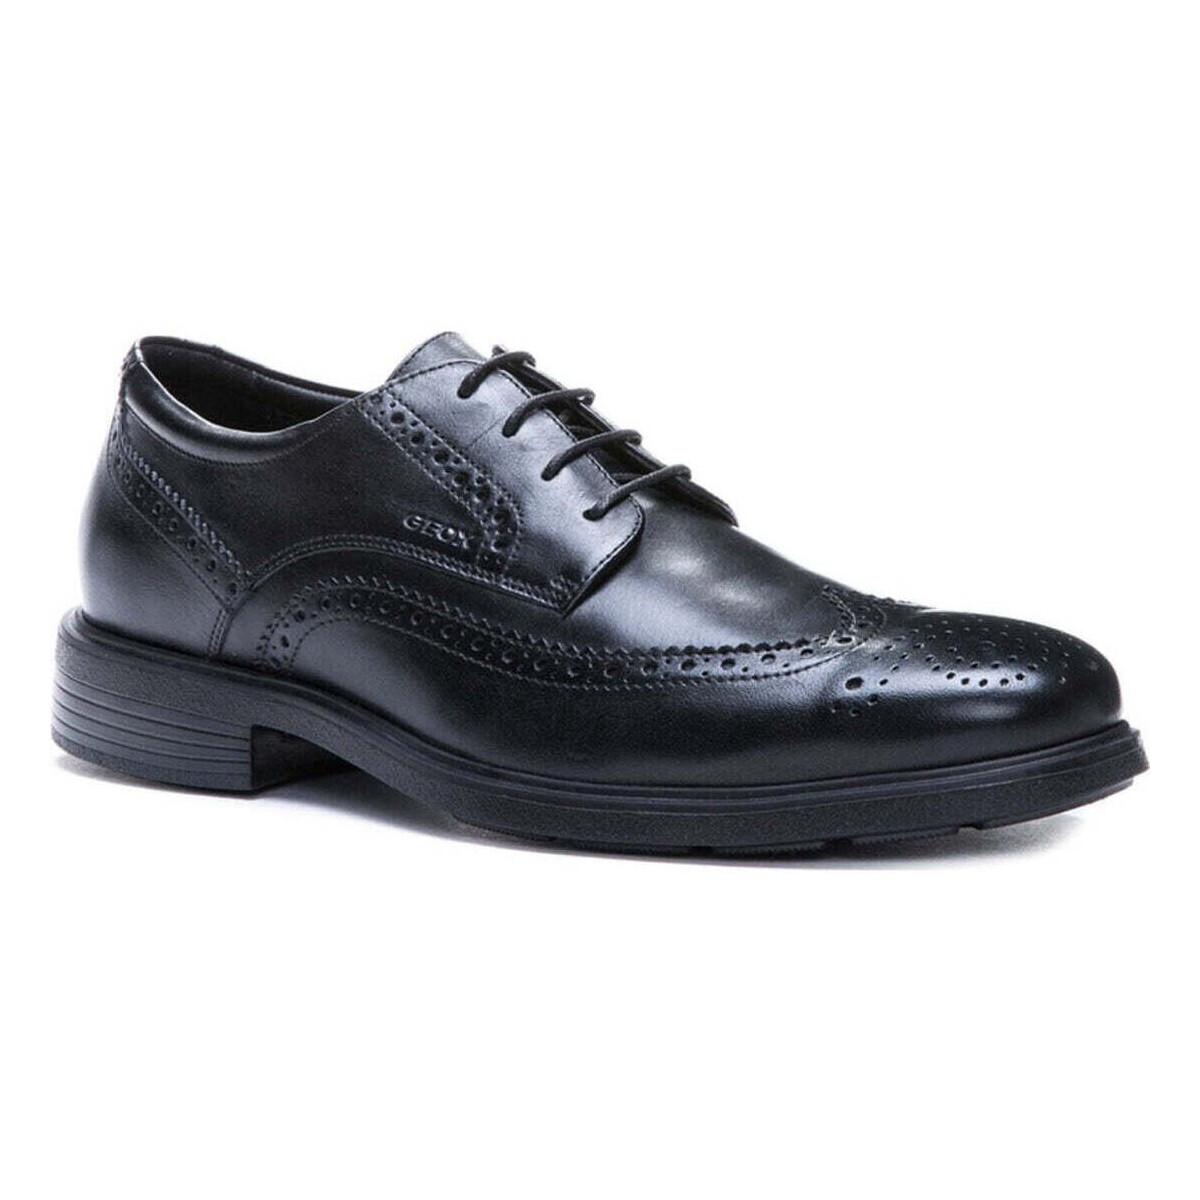 Pantofi Bărbați Pantofi sport Casual Geox  Negru